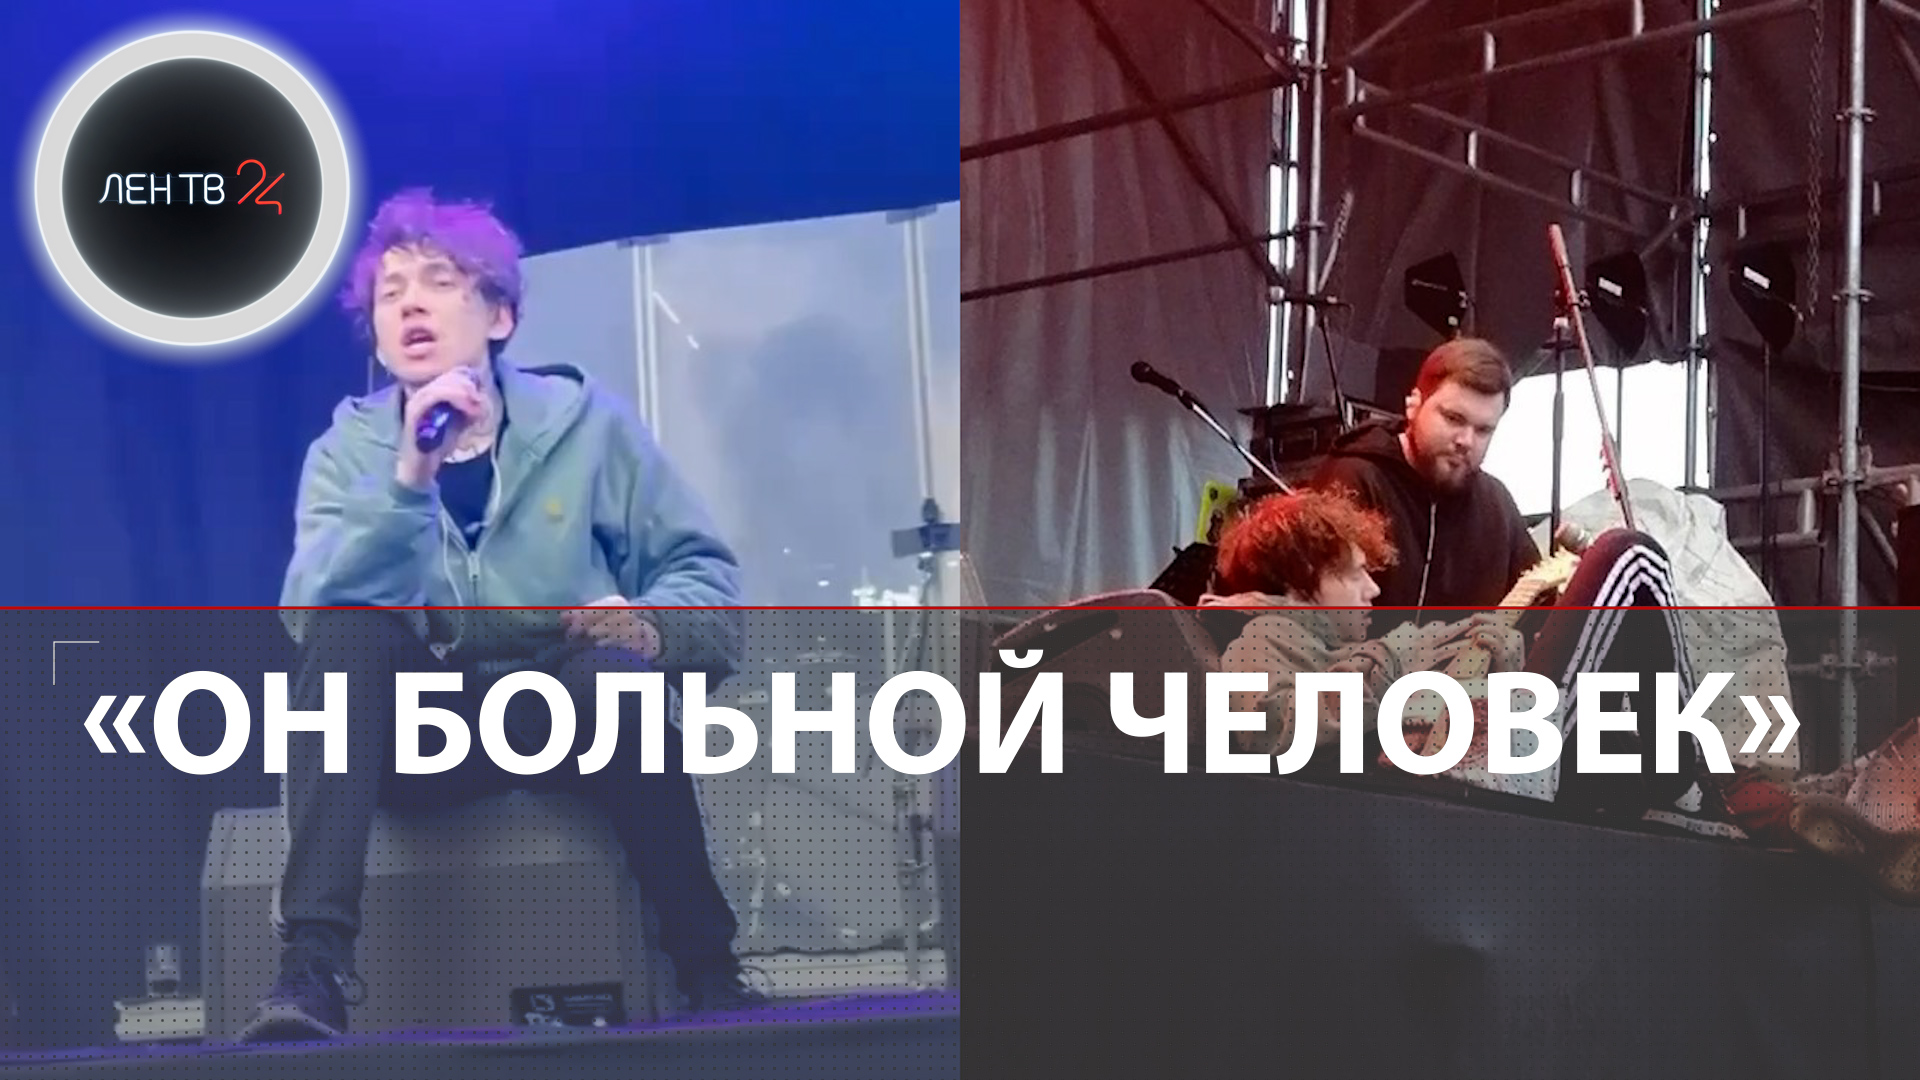 Пьяный Глеб из Три дня дождя сорвал концерт в Екатеринбурге и отправился на лечение | Проект закрыт